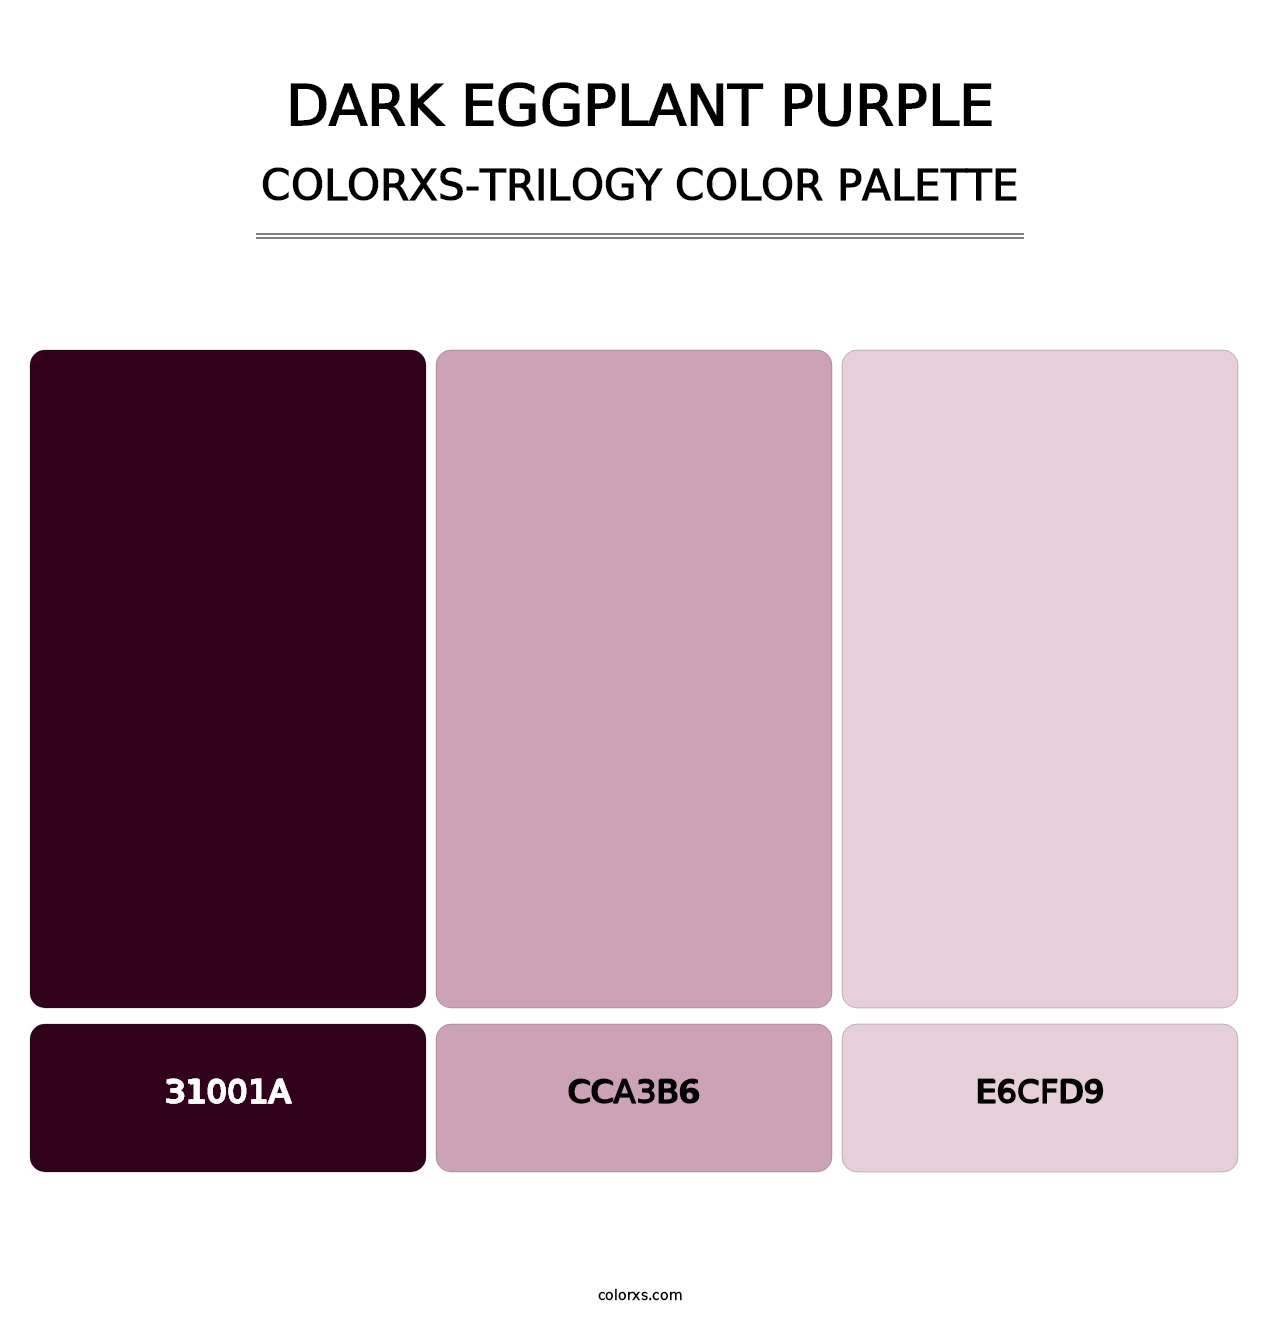 Dark Eggplant Purple - Colorxs Trilogy Palette